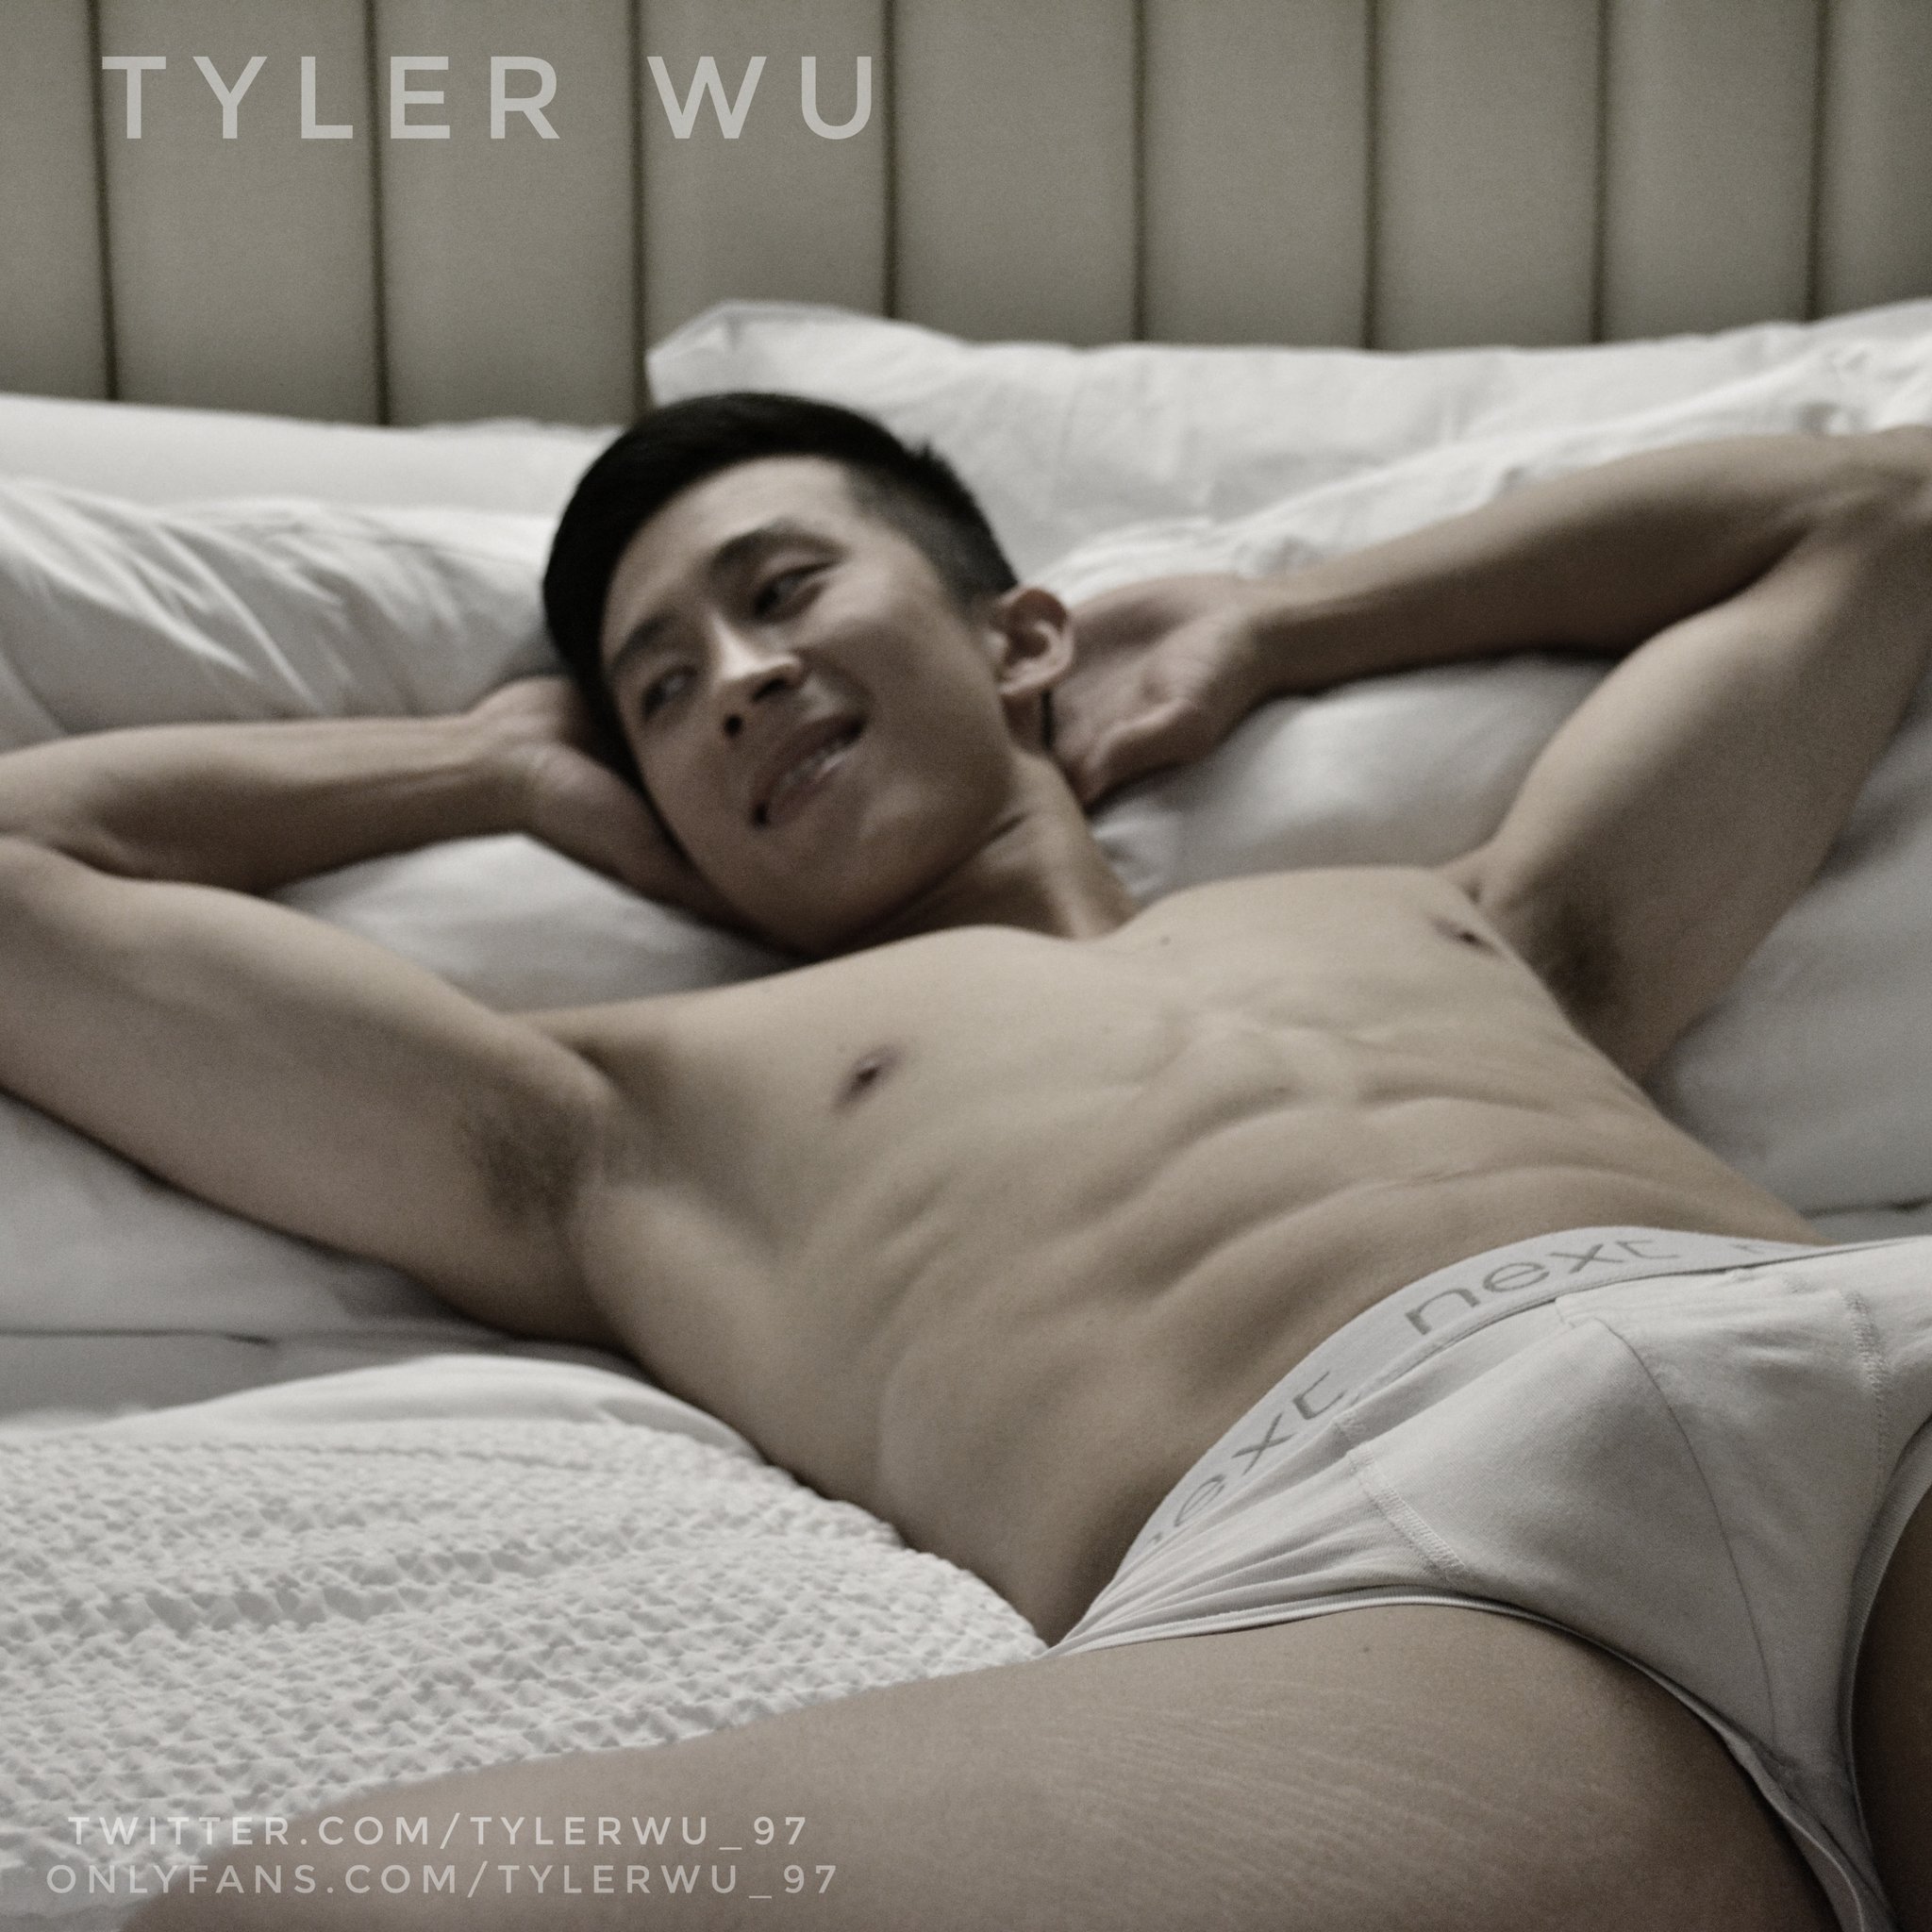 Wu onlyfans tyler Tyler Wu